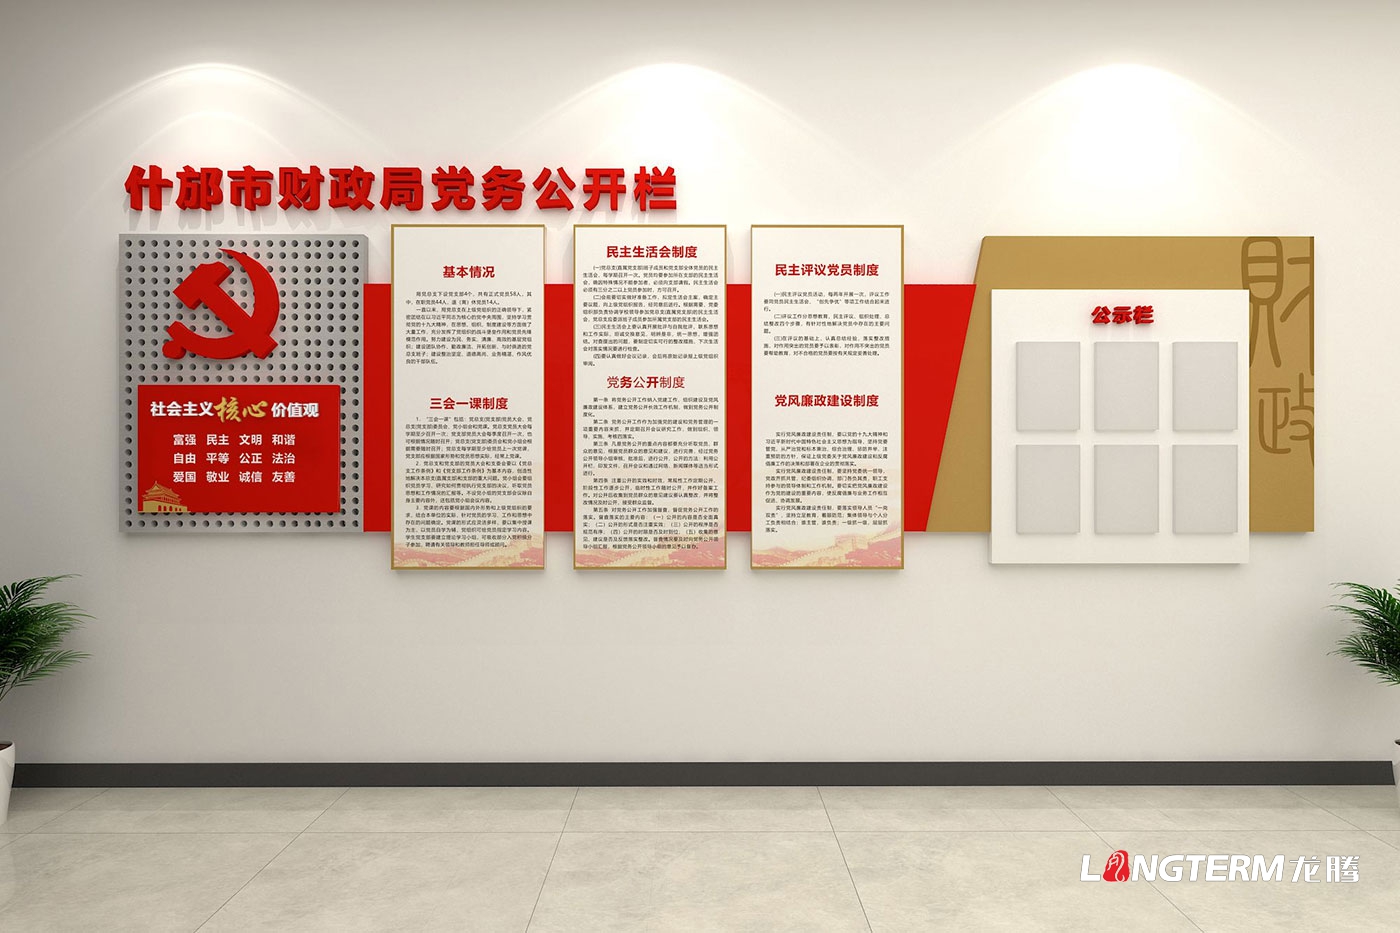 锦江就业局党政红色文化上墙设计_廉政广场文化氛围营造_党建文化活动创意设计